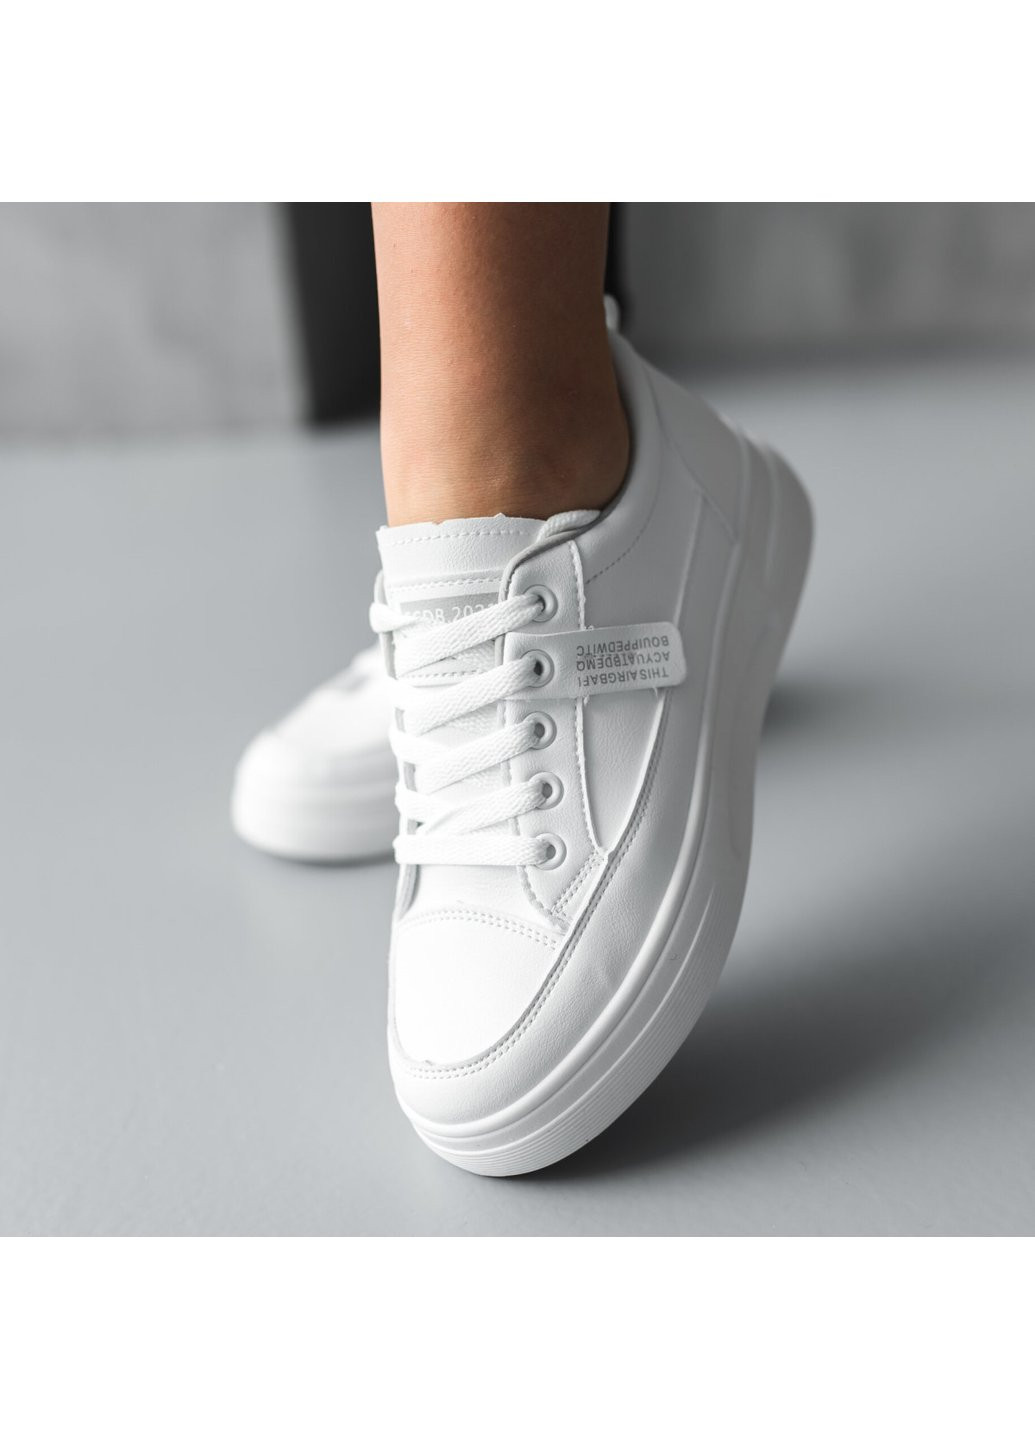 Белые демисезонные кроссовки женские digby 3720 36 23 см белый Fashion